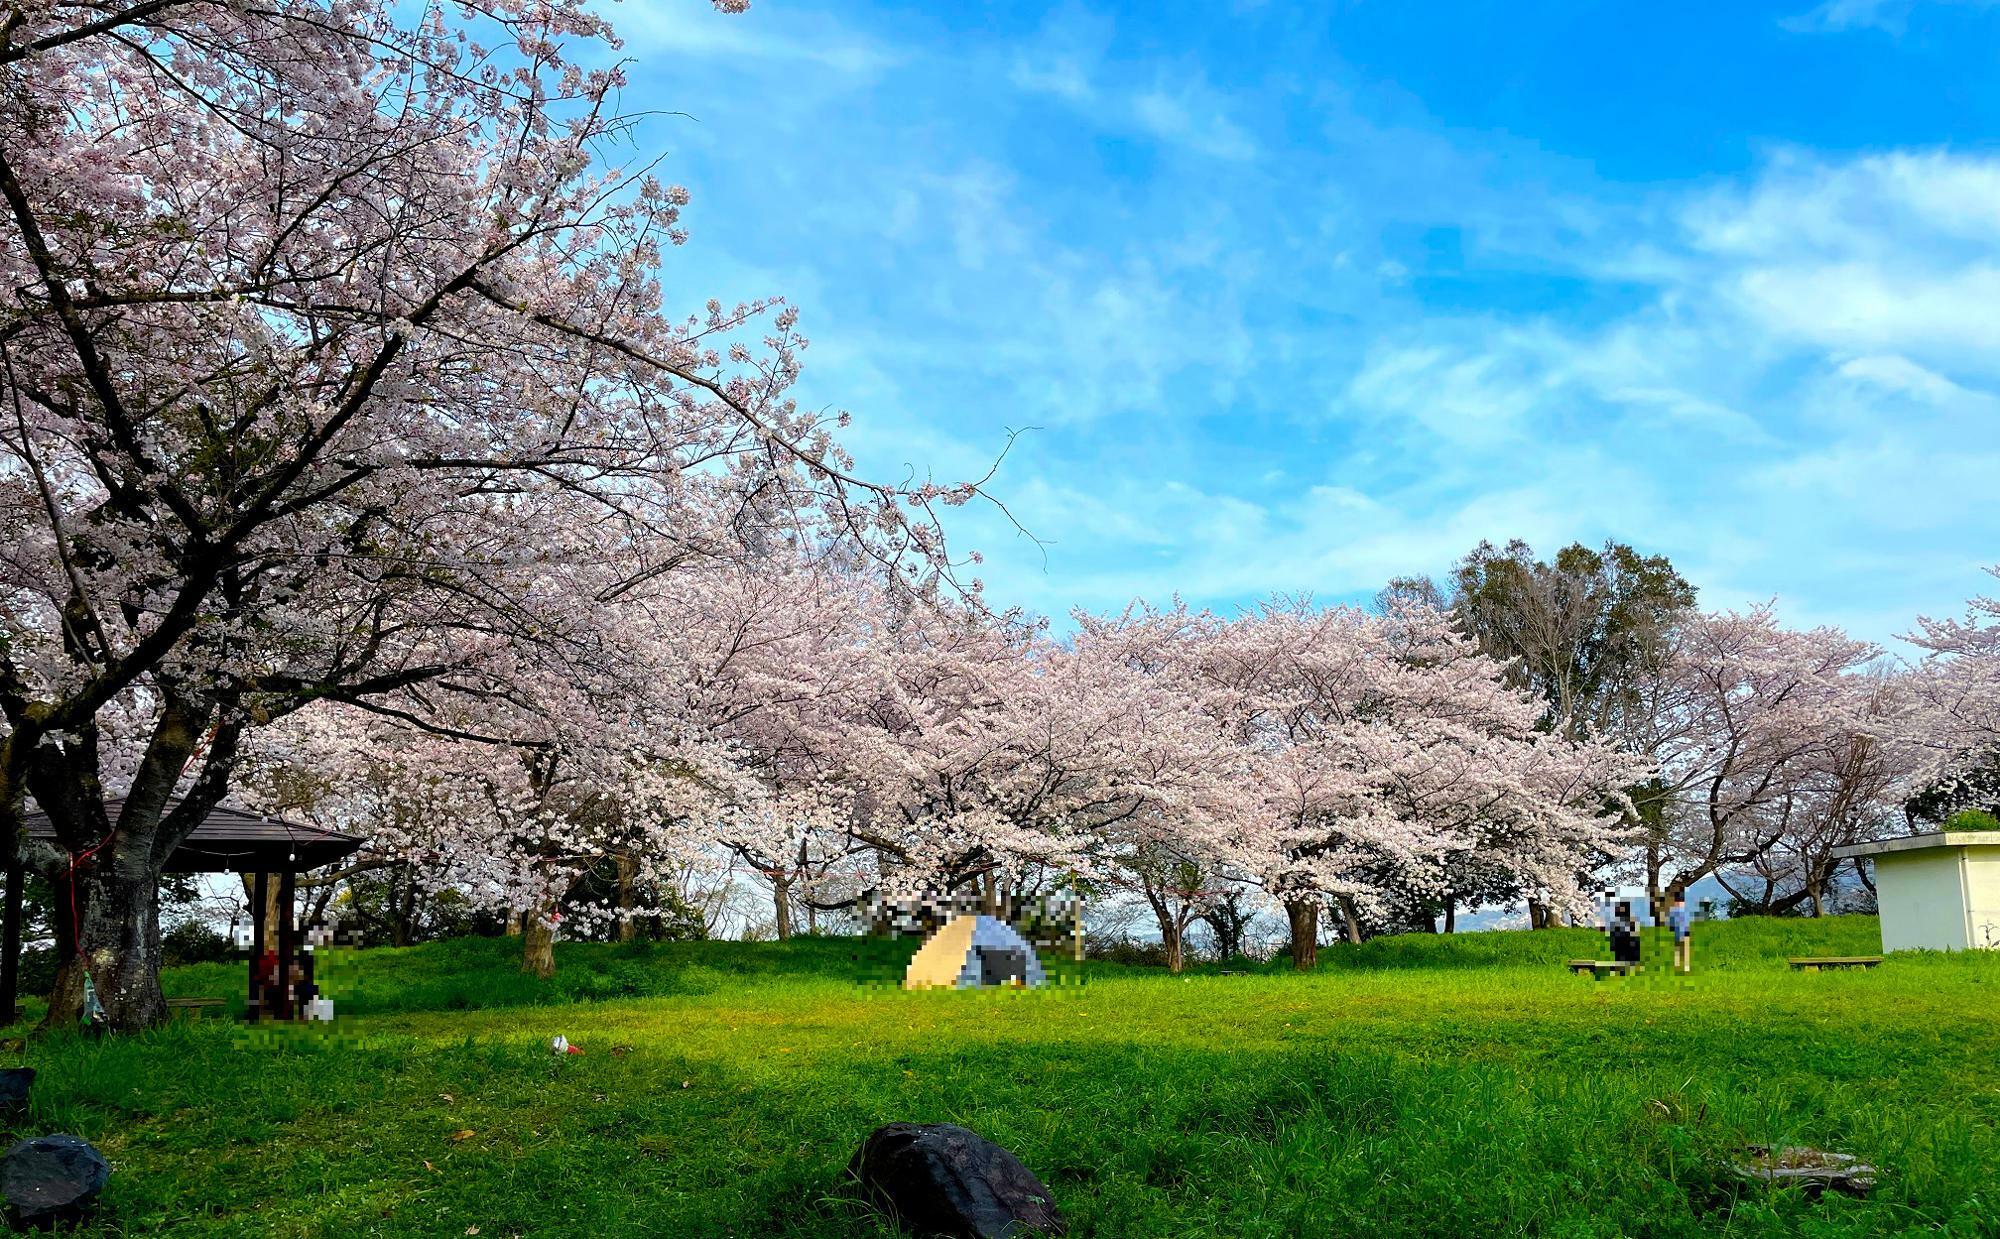 広場を囲む桜並木がきれい。